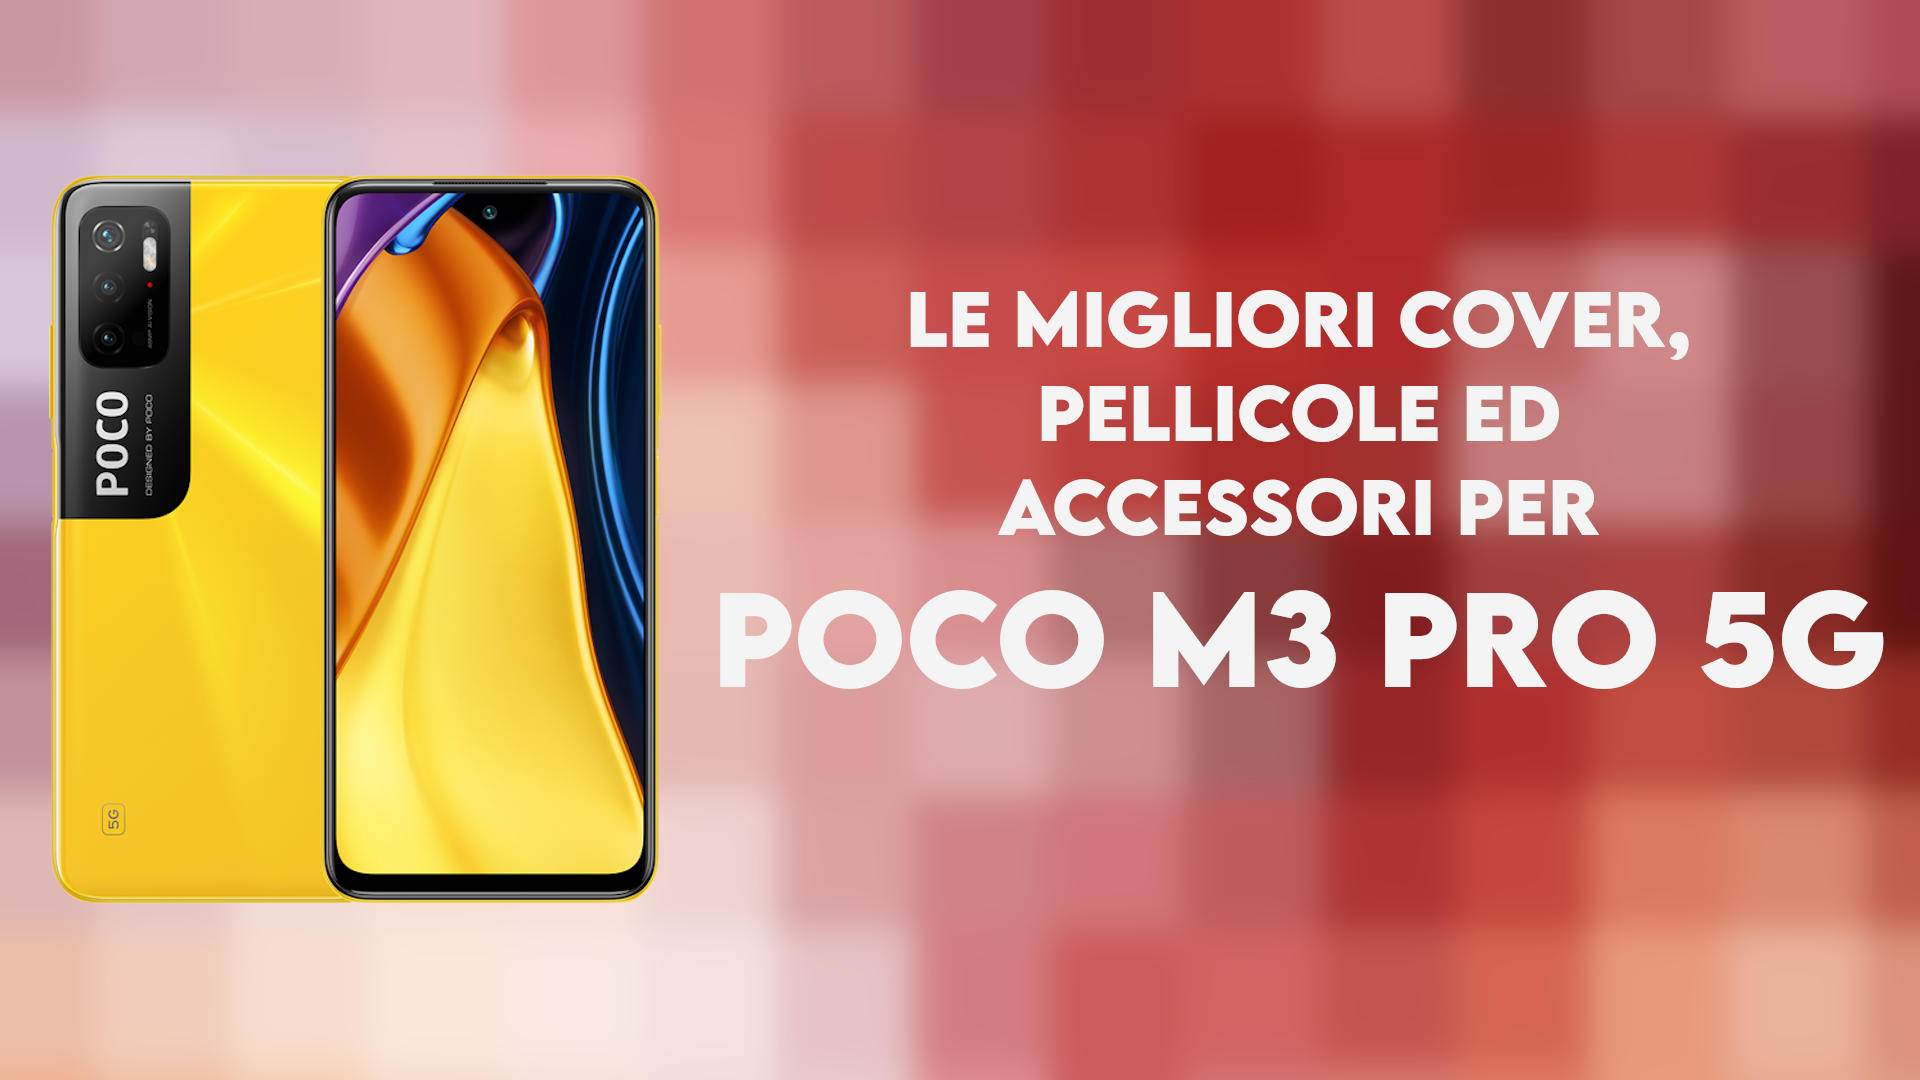 Poco M3 Pro 5g Aliexpress